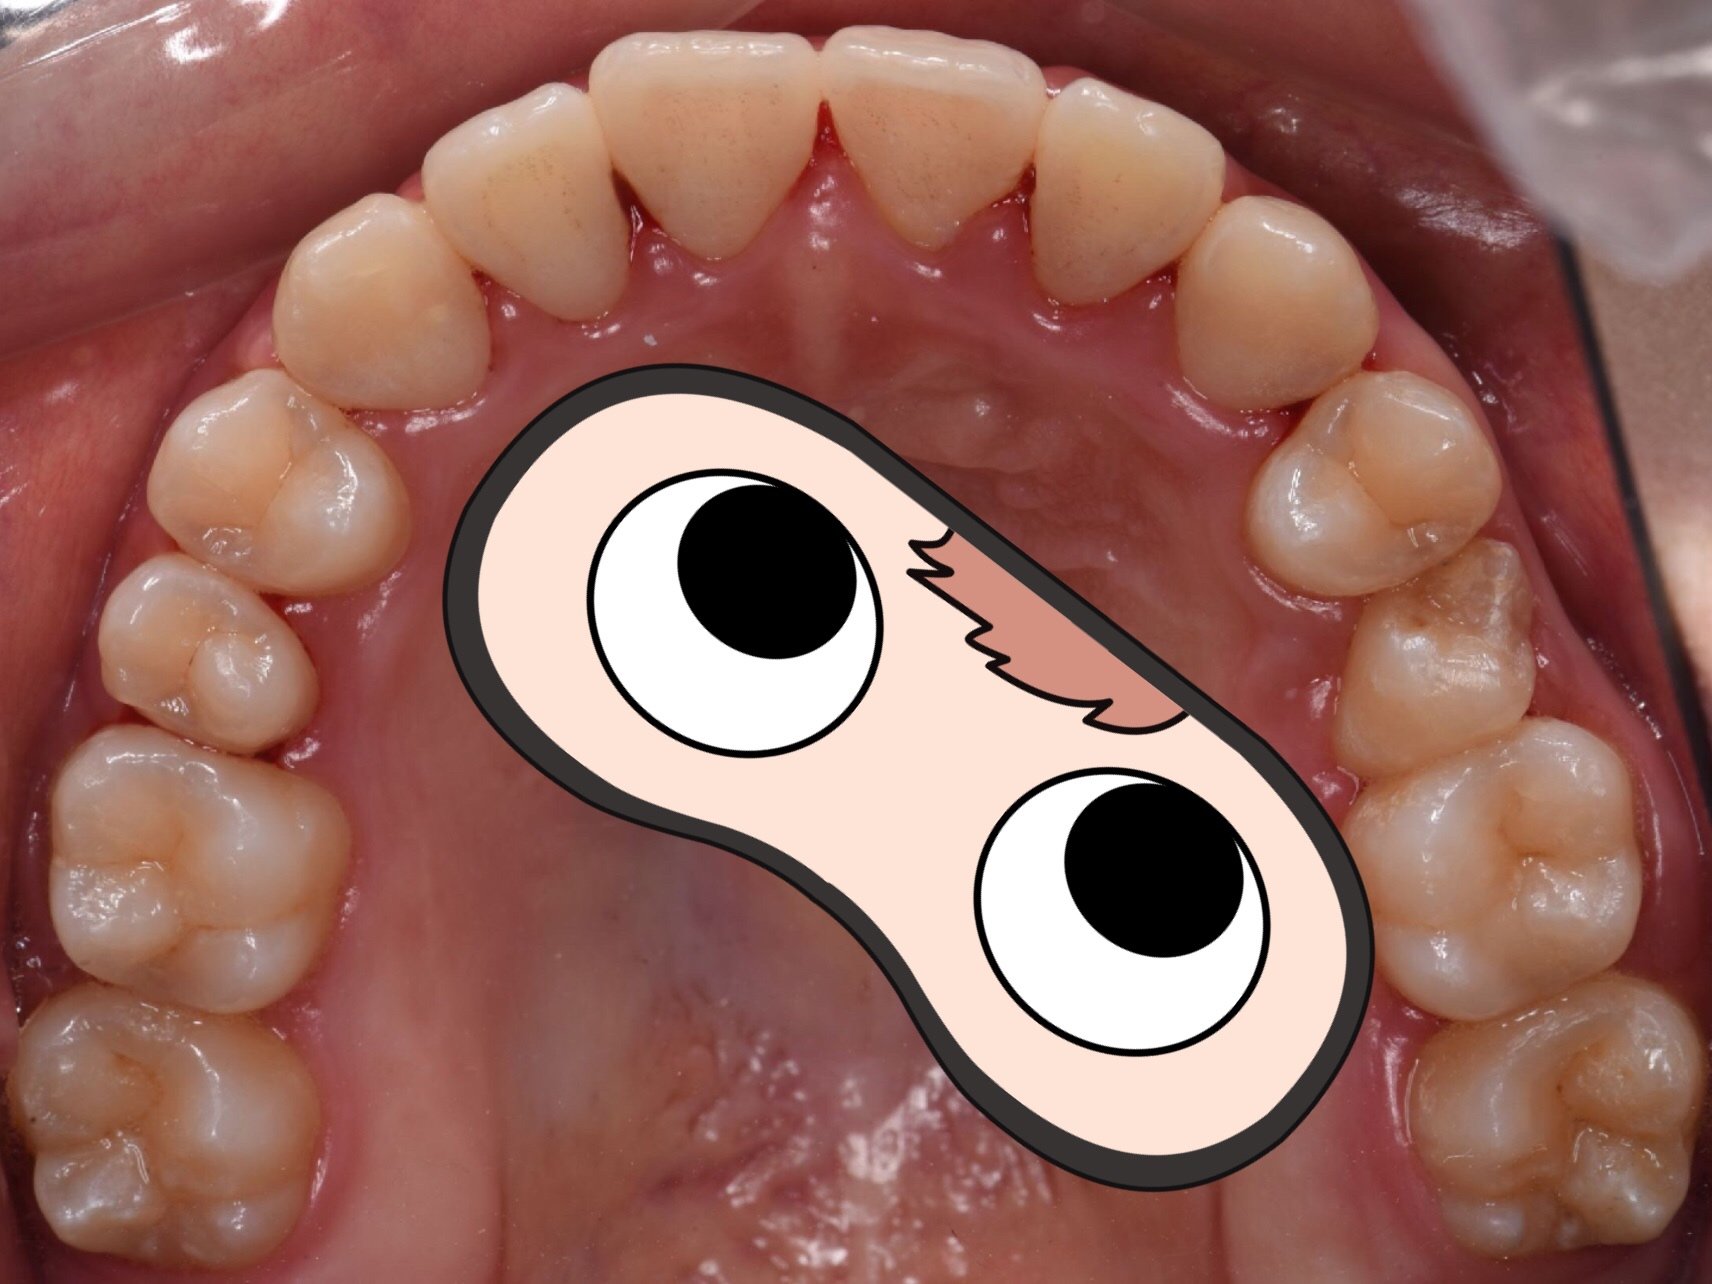 我是大龅牙,嘴巴自然闭合状态特别不自然,牙齿拥挤,